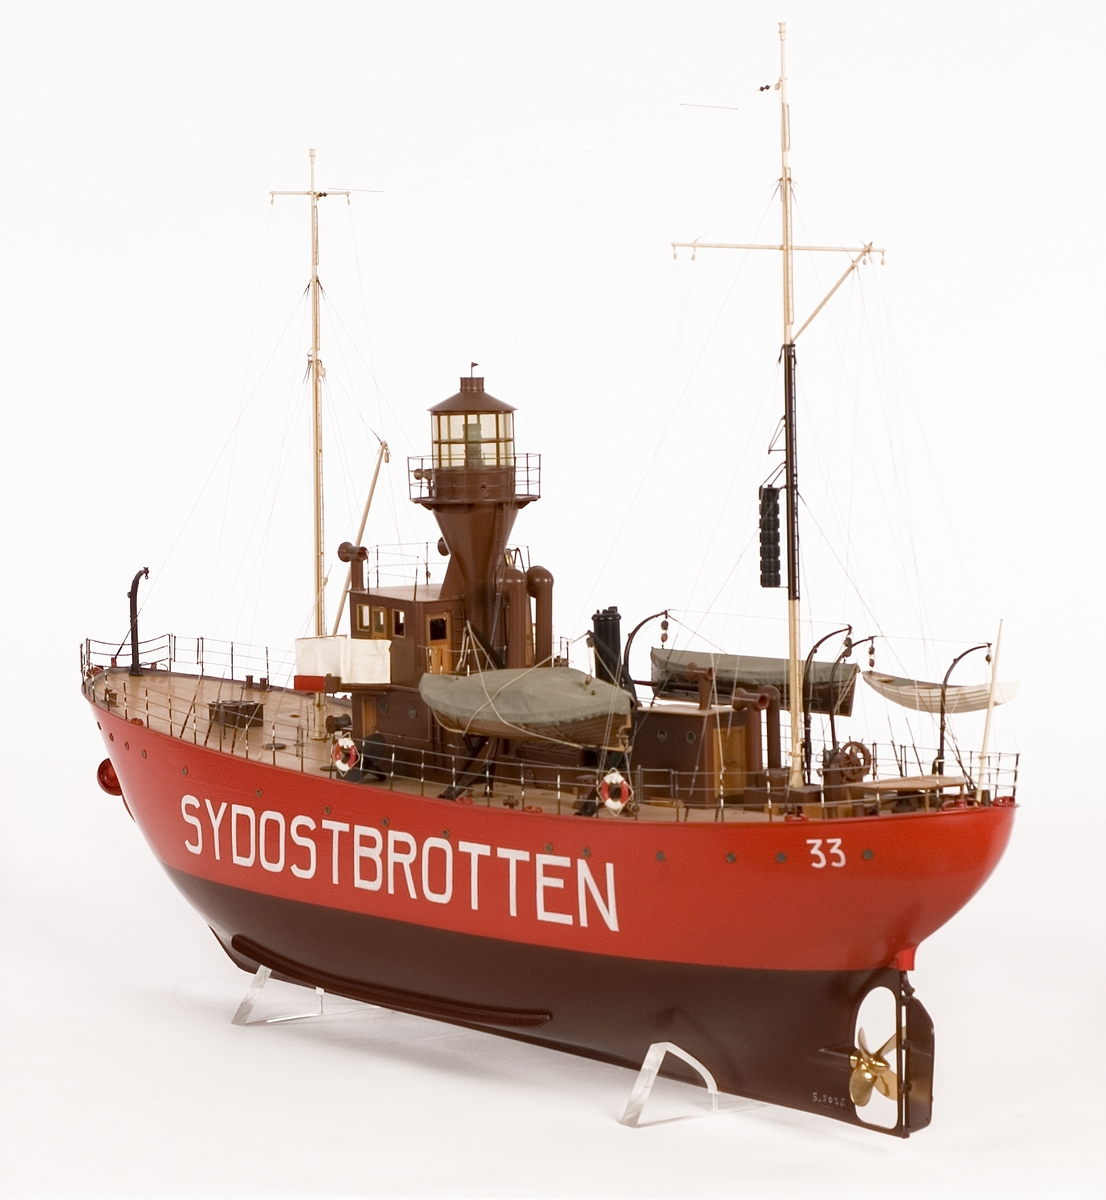 Fartygsmodell av fyrskeppet SYDOSTBROTTEN styrbords sida öppen, visande inredning. Fyrtorn med plattform runt lanterninen. Två master, tre båtar och ett skålankare i centralt stävklys.